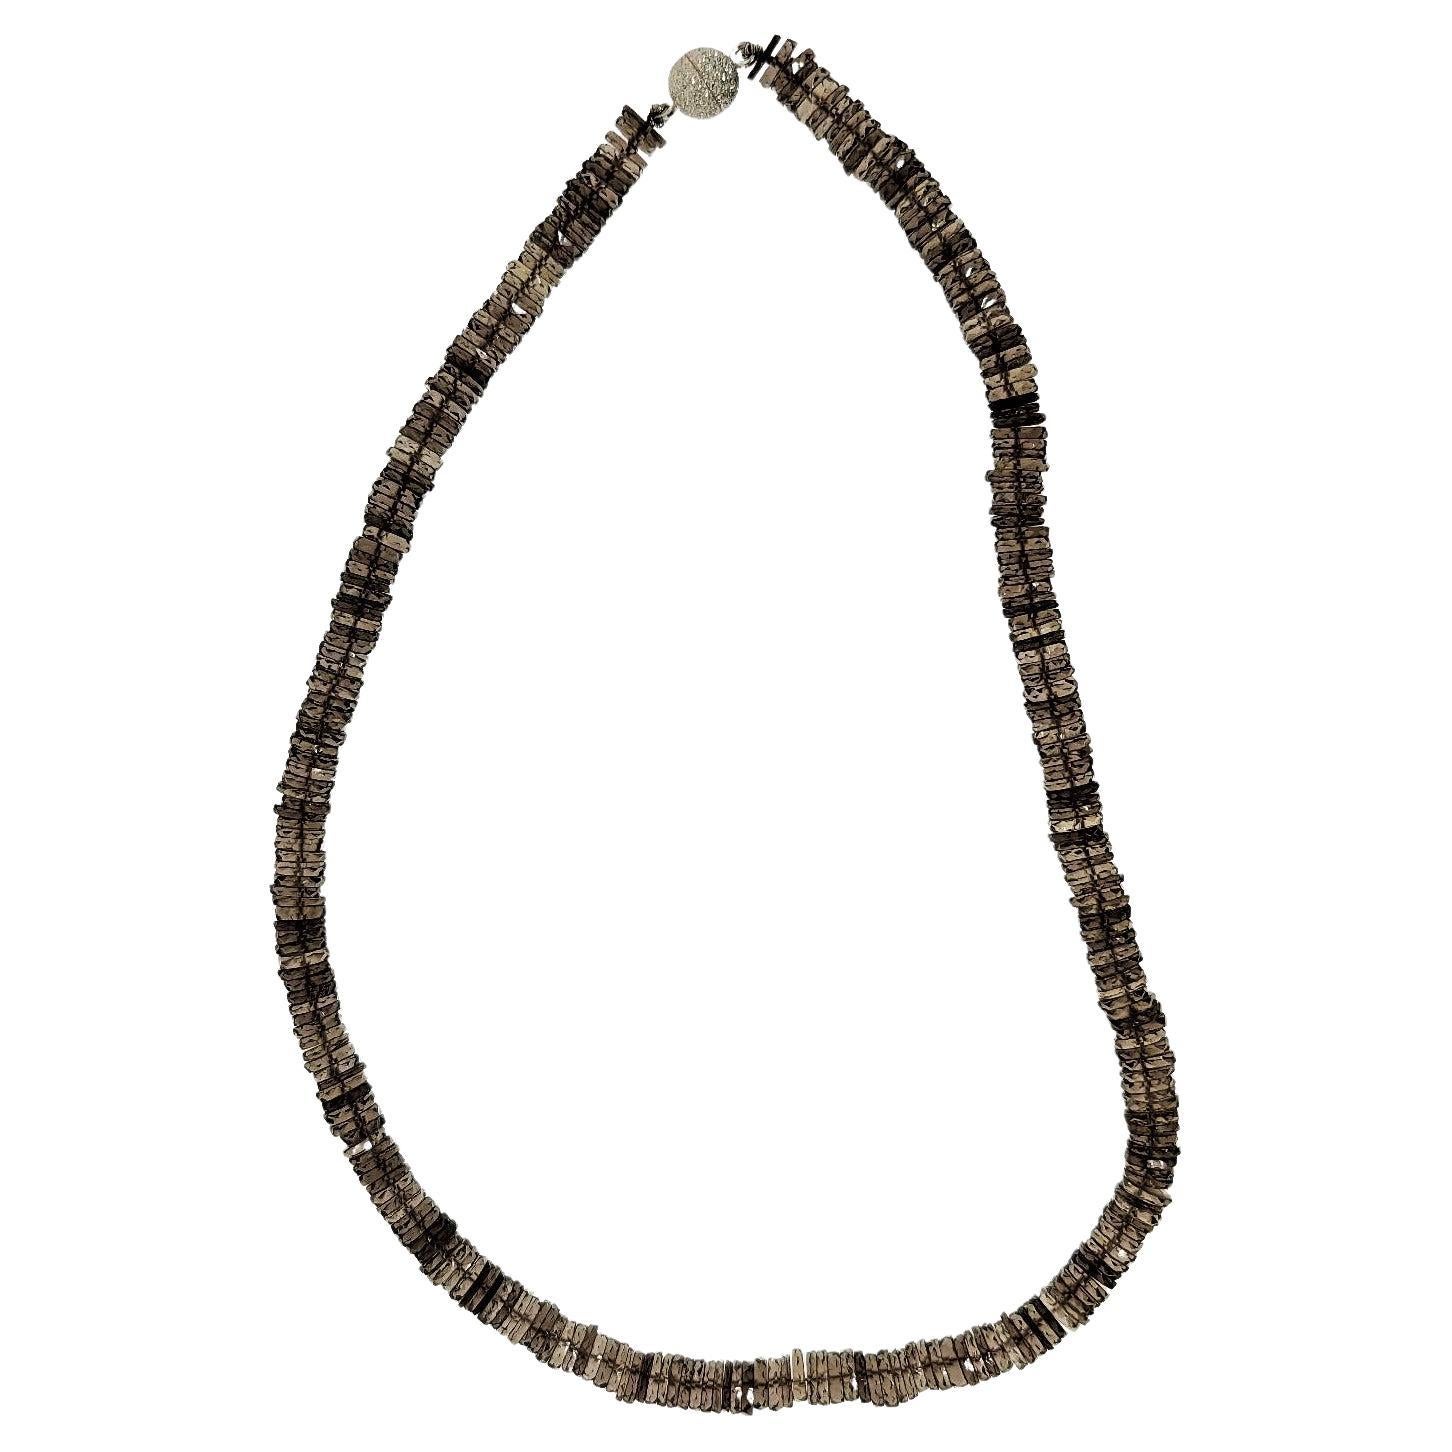 Die facettierten Rauchquarz-Rondelle in dieser Halskette variieren leicht in der Farbe und bringen Leben in diesen Stein.  Die Perlen haben einen Umfang von 6,5-7 mm und sind am Ende der Rondelle facettiert. Sie sind mit einem silbernen